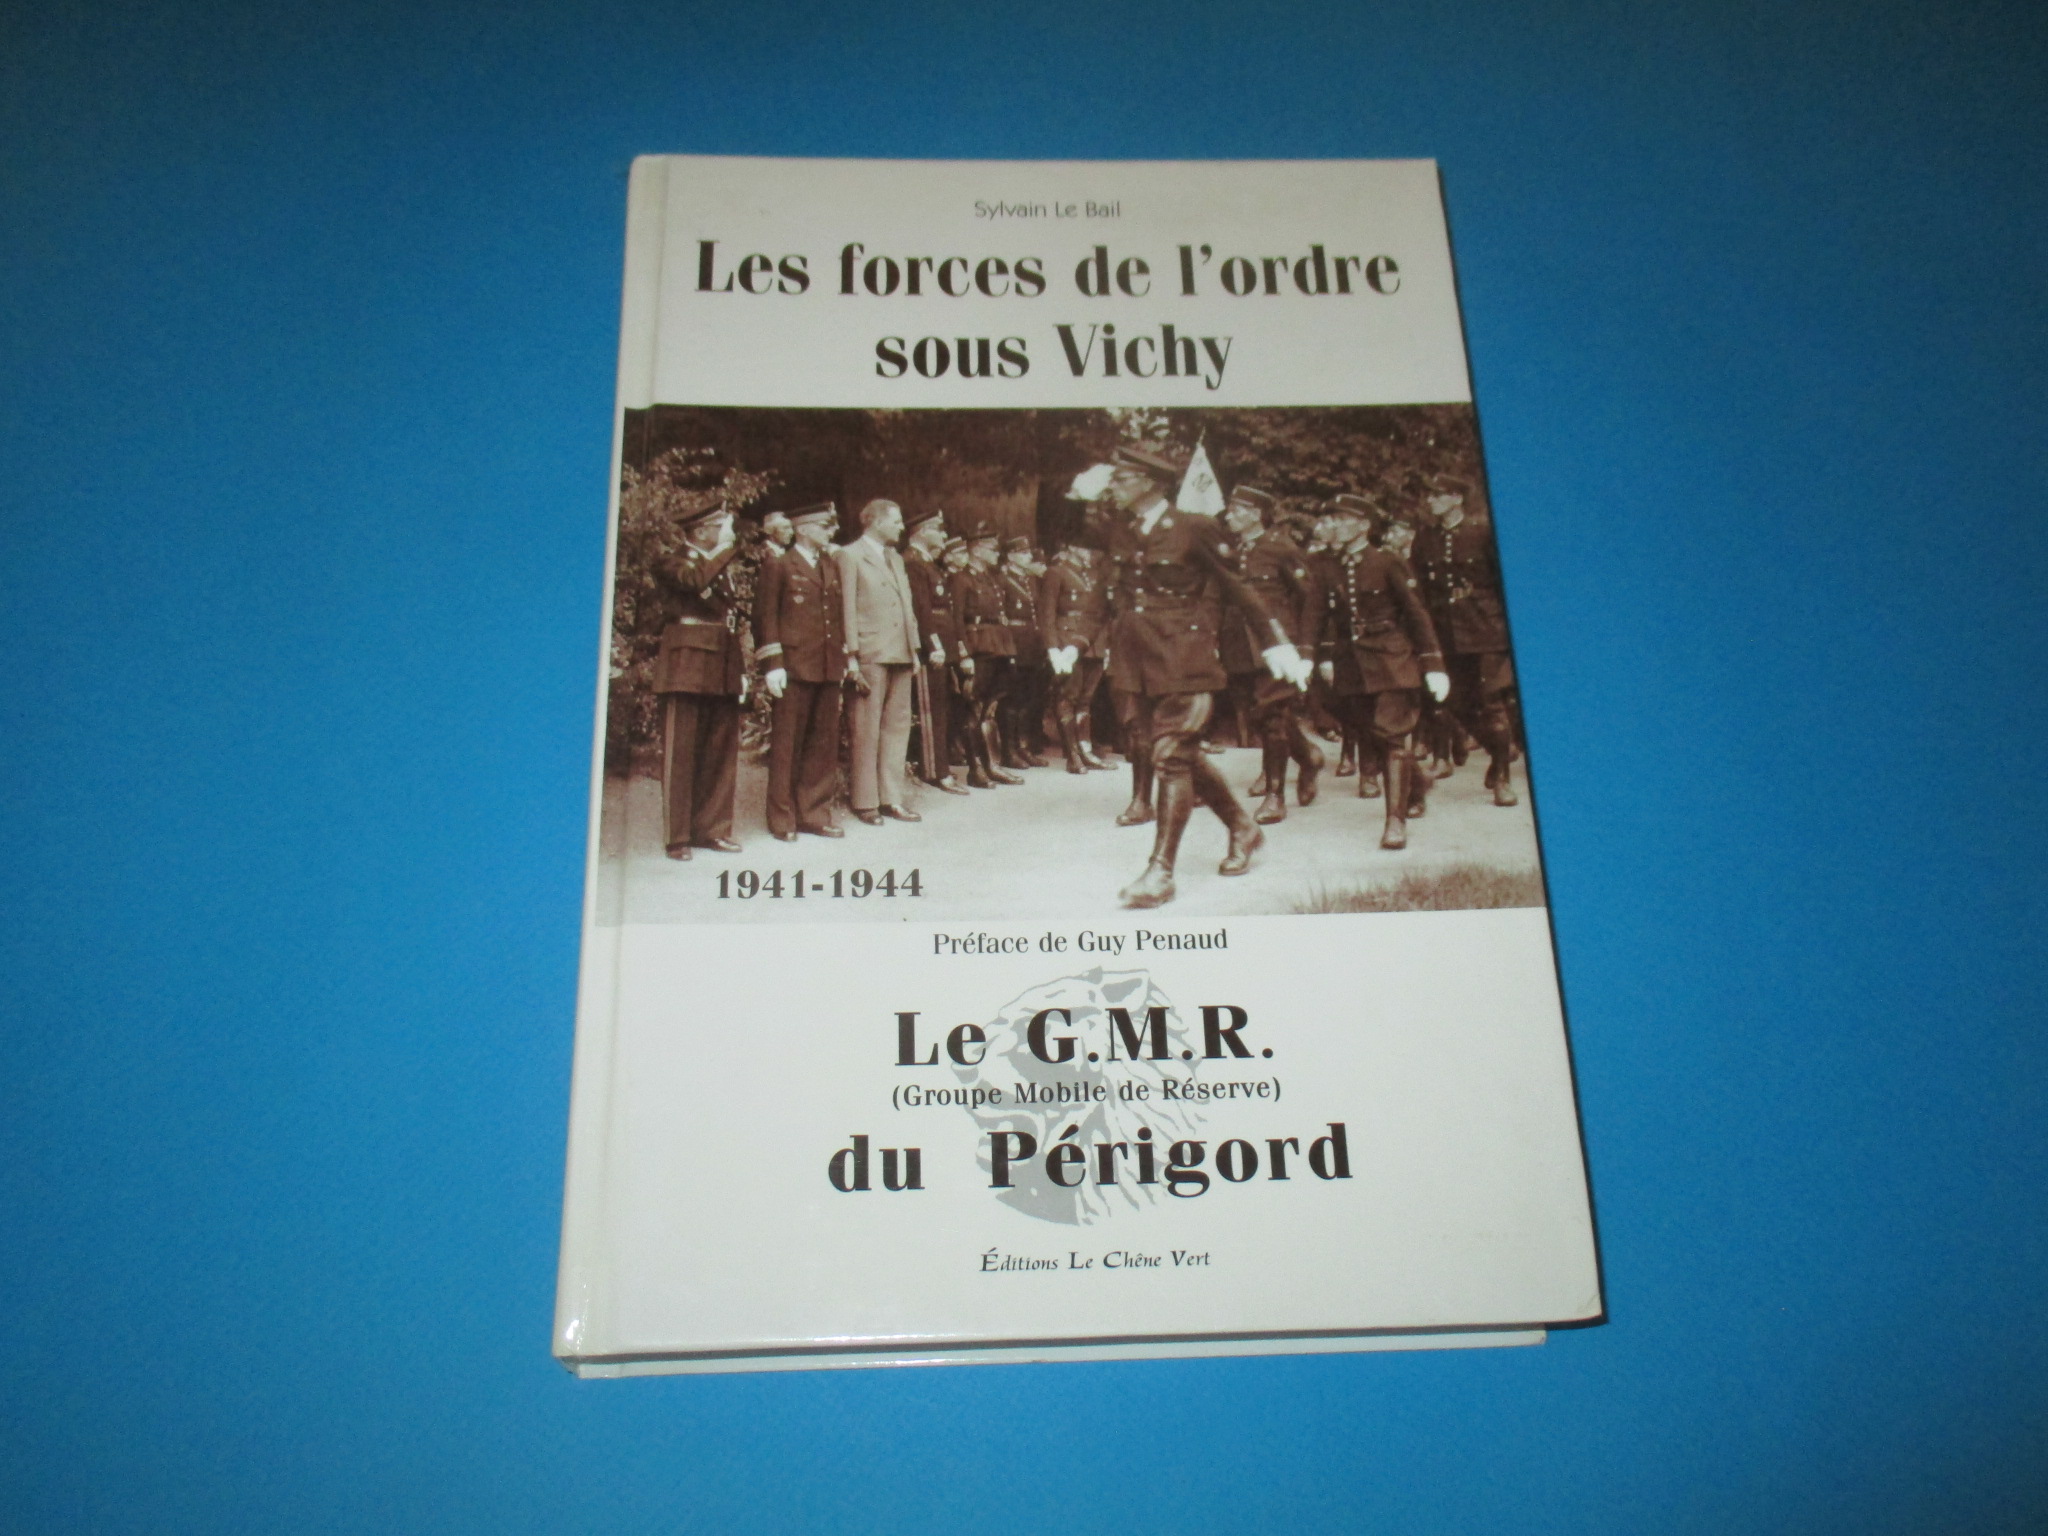 Les forces de l\'ordre sous Vichy, Le G.M.R. du Périgord, GMR, Sylvain Le Bail, Chêne Vert